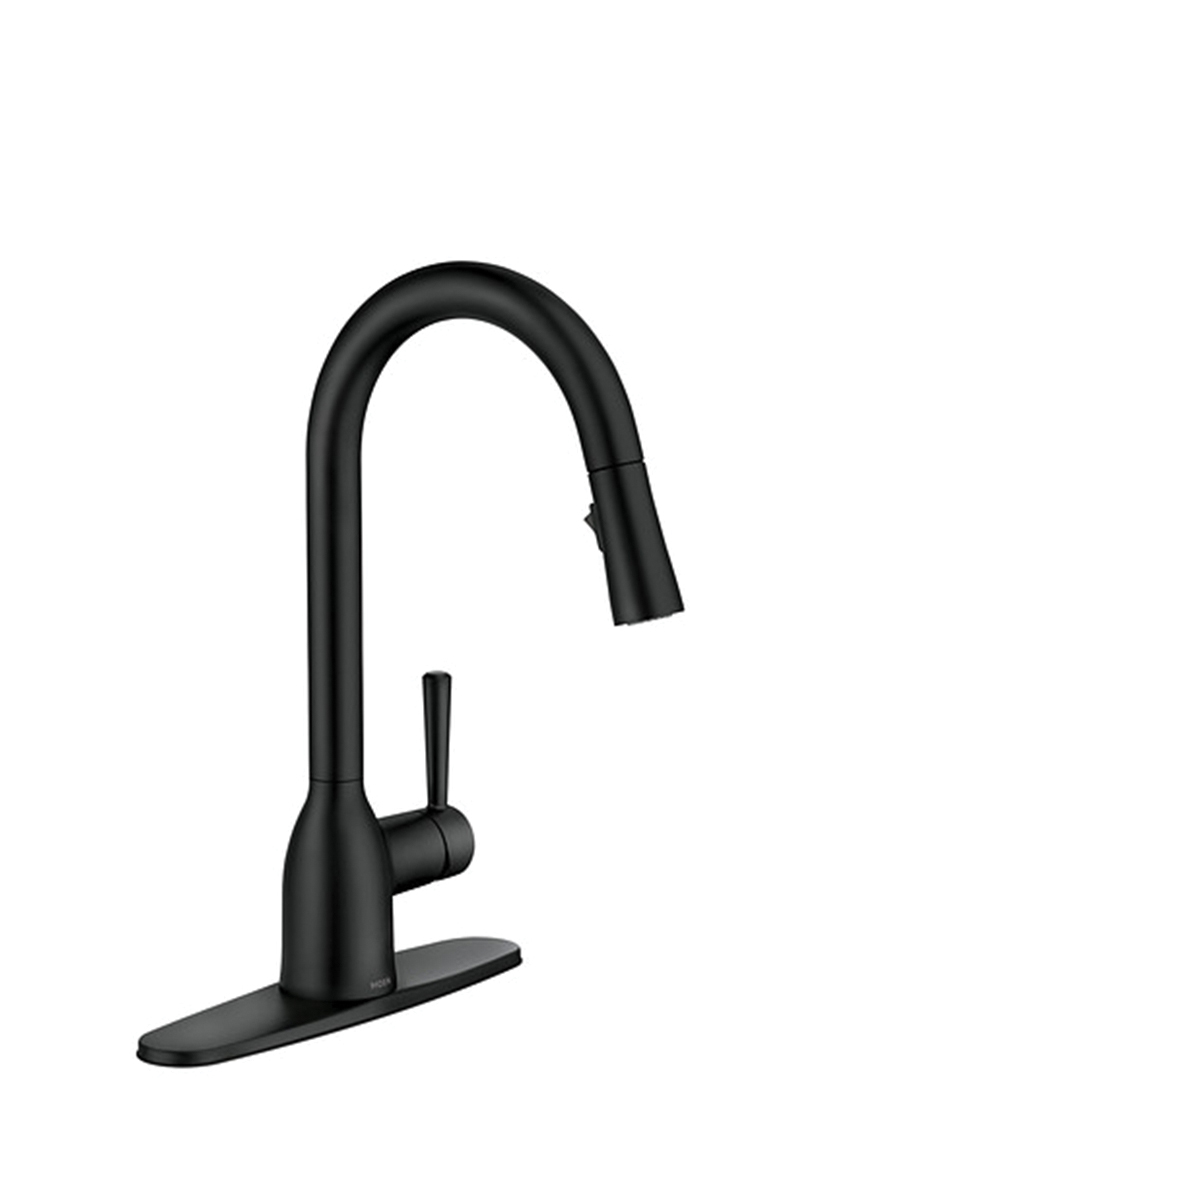 Adler Series 87233BL Pull-Down Kitchen Faucet, 1.5 gpm, 1-Faucet Handle, 1-Faucet Hole, Metal, Matte Black